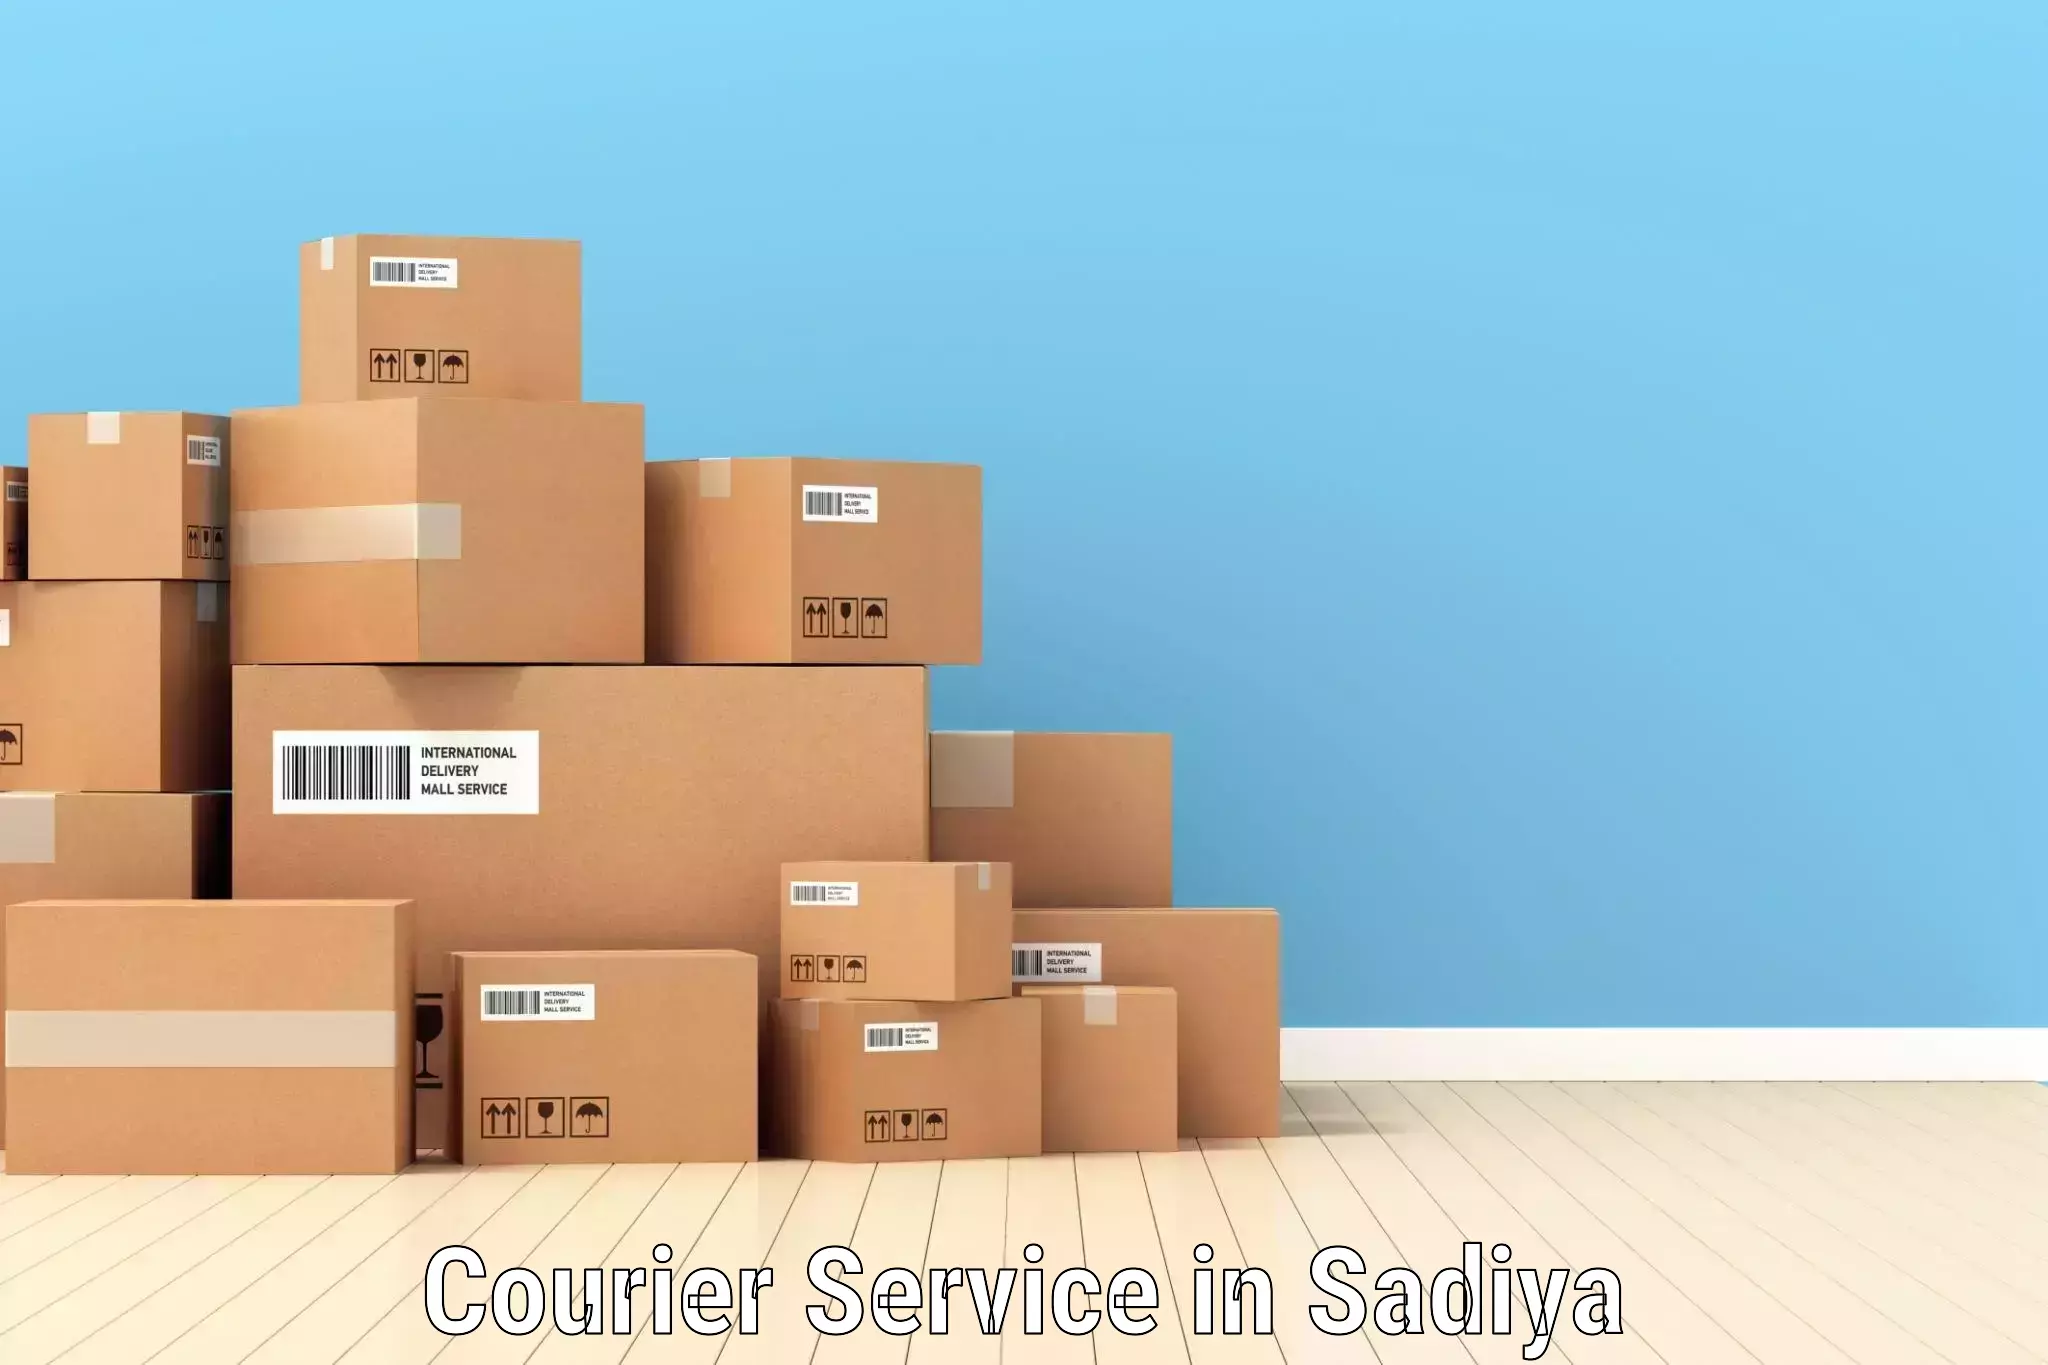 Bulk shipment in Sadiya